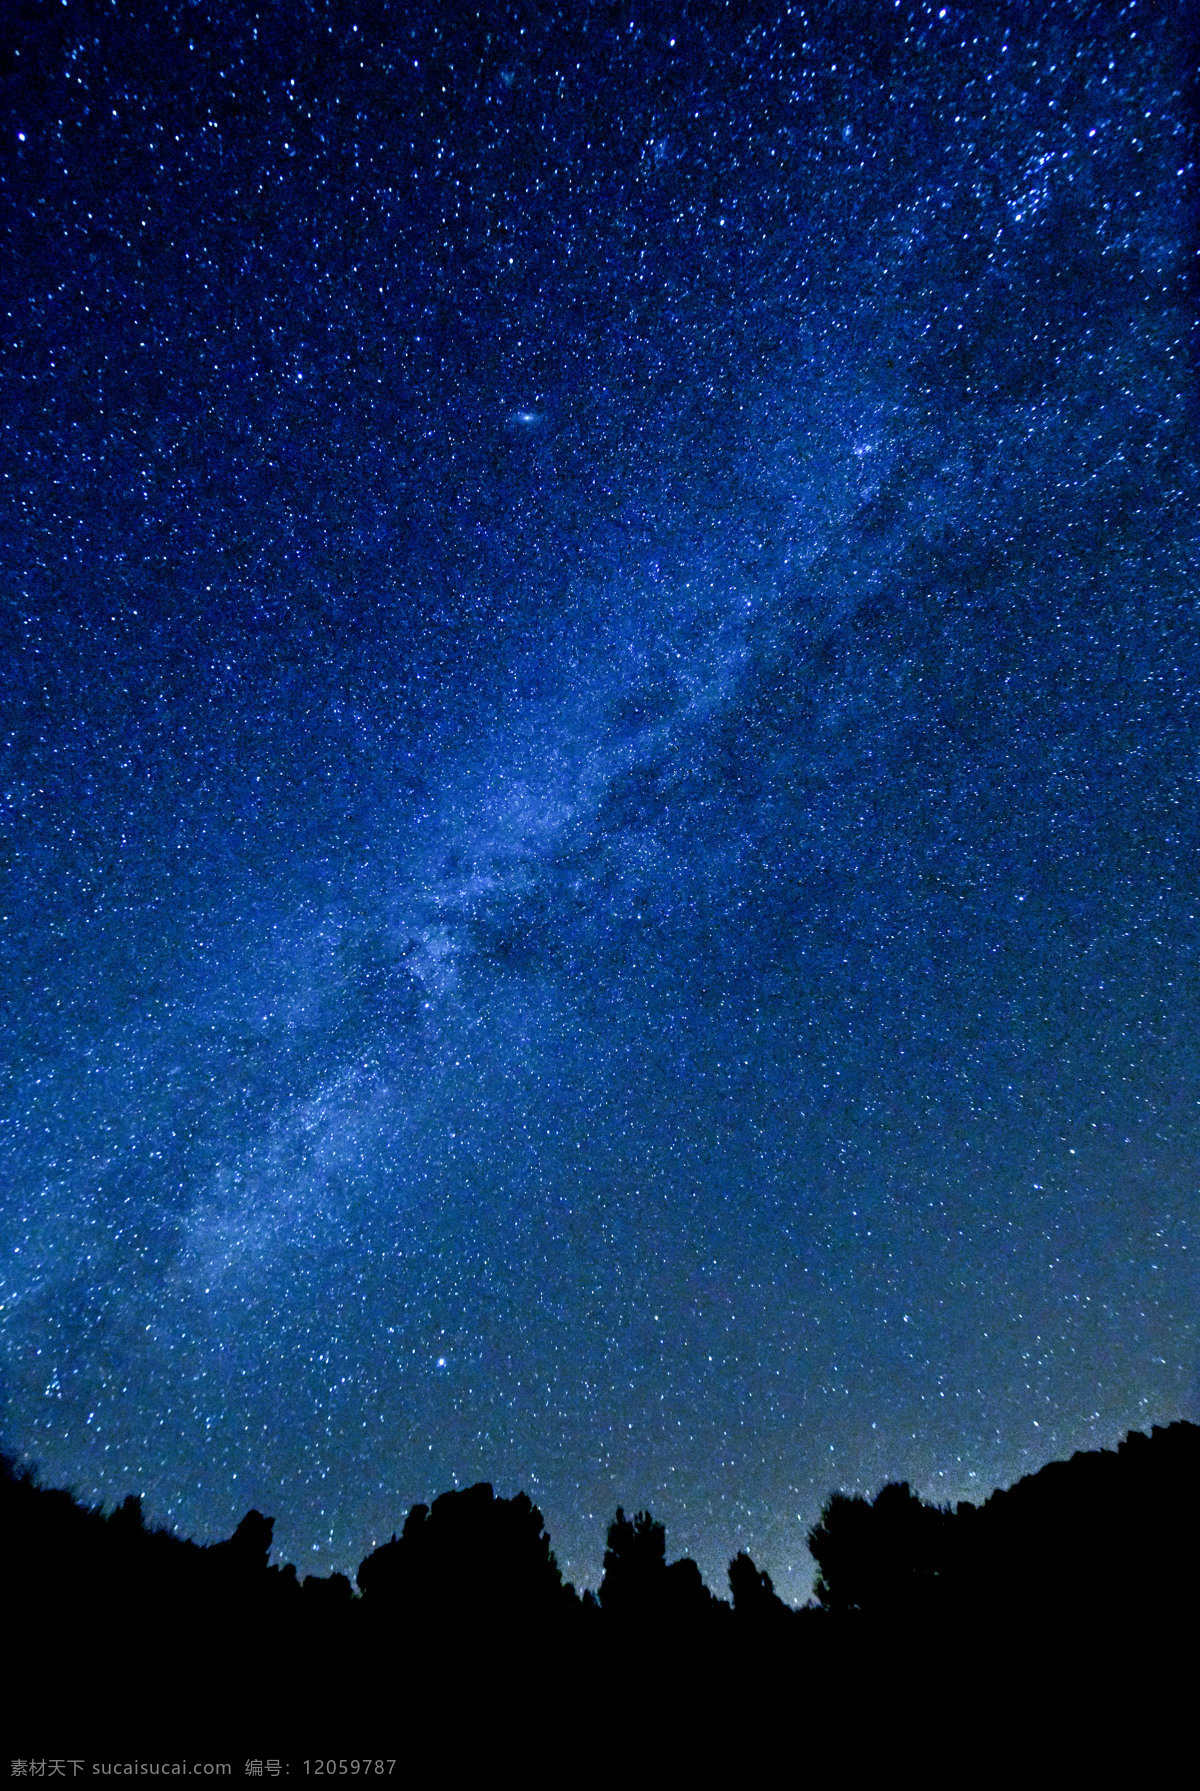 星空银河 星空 银河 蓝天 夜空 星星 繁星 许愿 愿望 夜色 天空 旅游摄影 自然风景